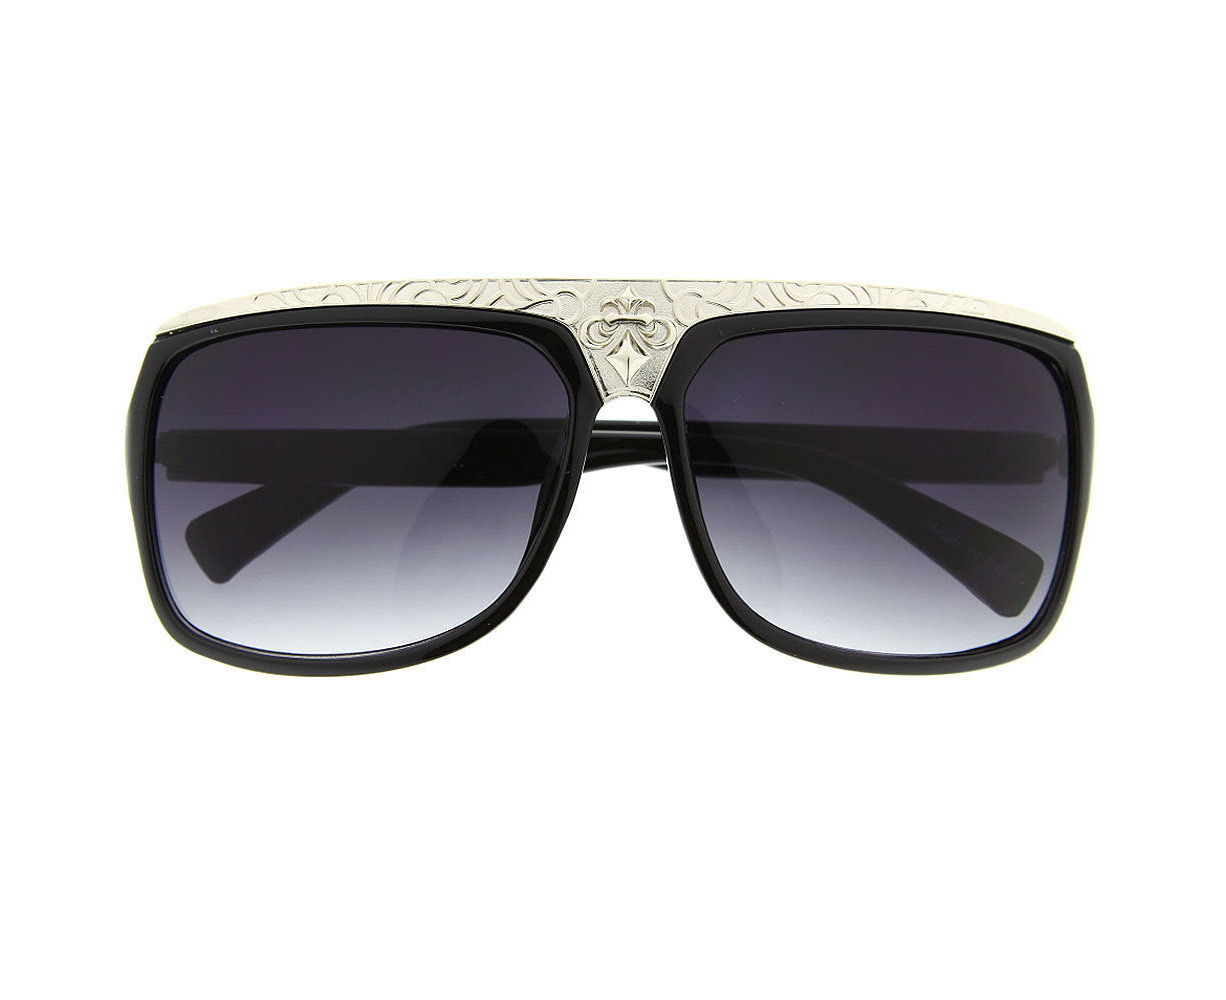 Grinderpunch Metal Crown Wide Flat Top Sunglasses Black Black Au 